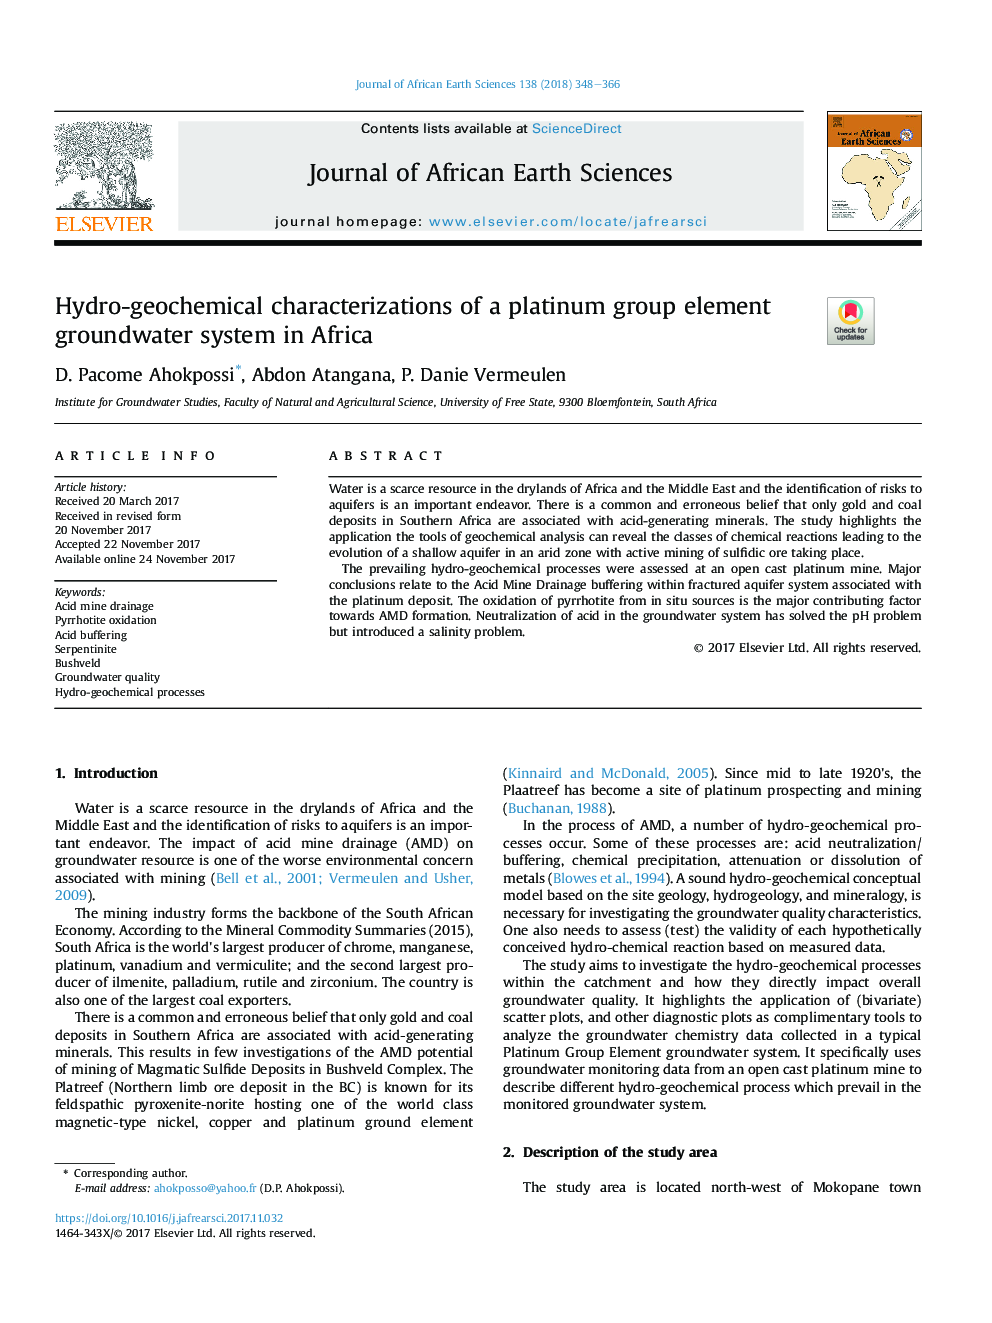 خصوصیات هیدروژئوشیمیایی یک سیستم آب زیرزمینی عنصر پلاتین در آفریقا